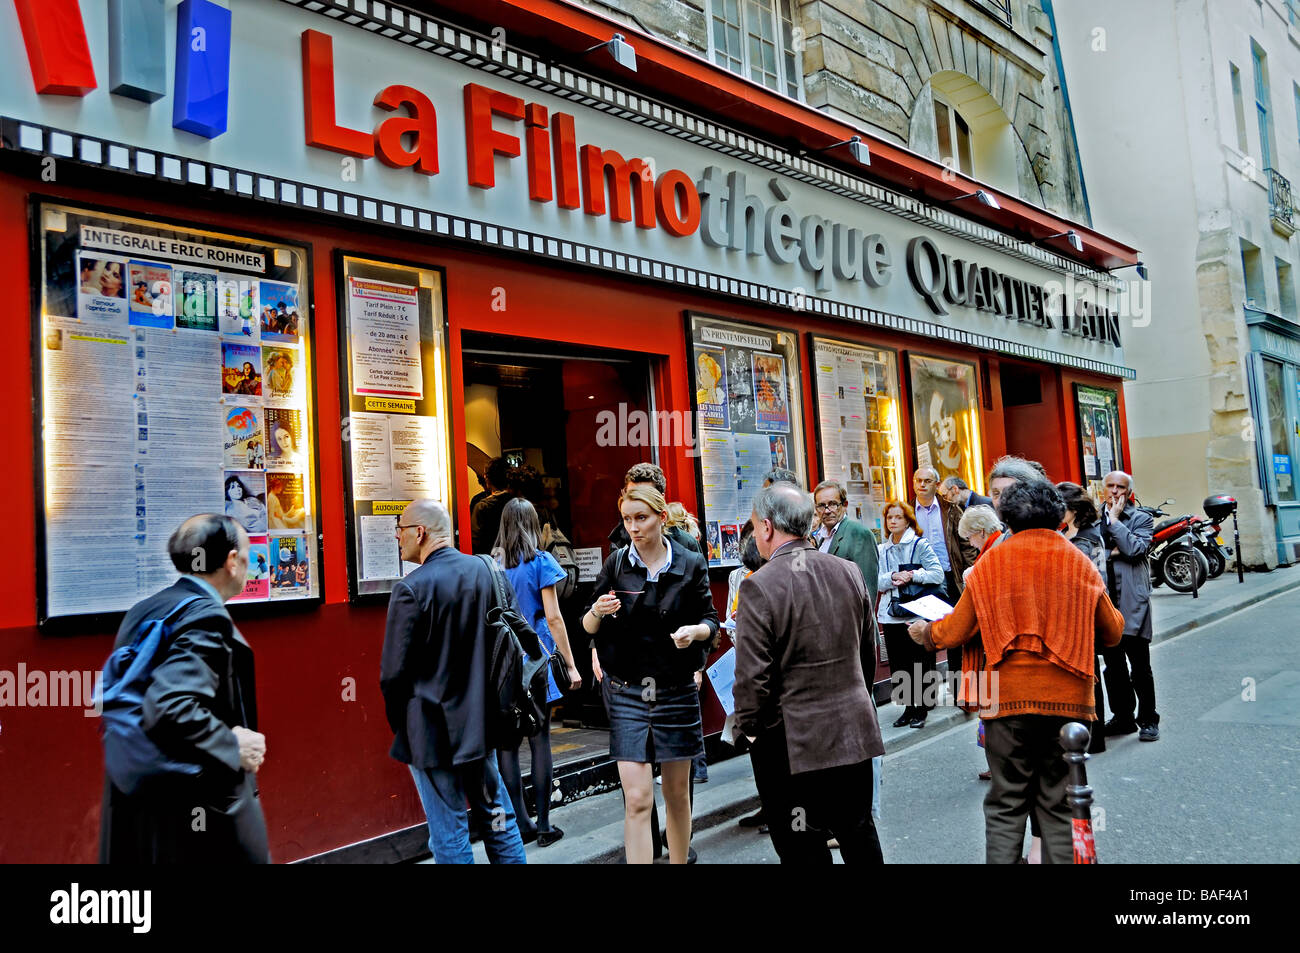 Parigi Francia, Street Scene, esterno, cinema indipendente francese, quartiere Latino, 'la Filmotheque' Front Movie Theatre Marquee, ESTERNO, attesa Foto Stock